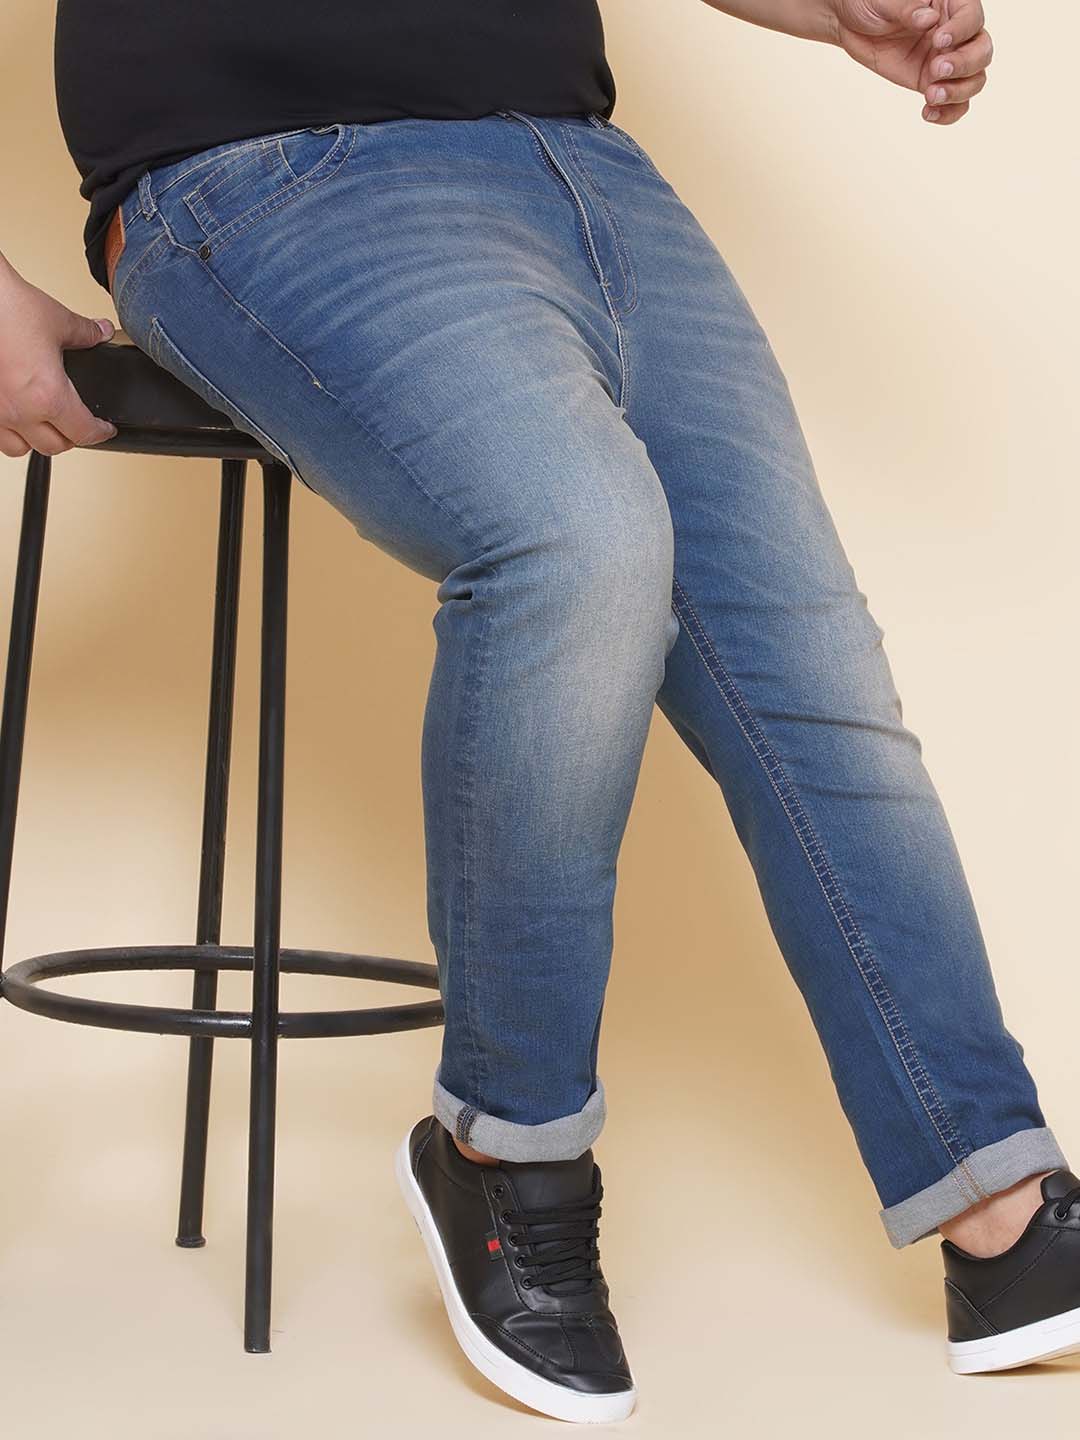 bottomwear/jeans/JPJ27108/jpj27108-1.jpg